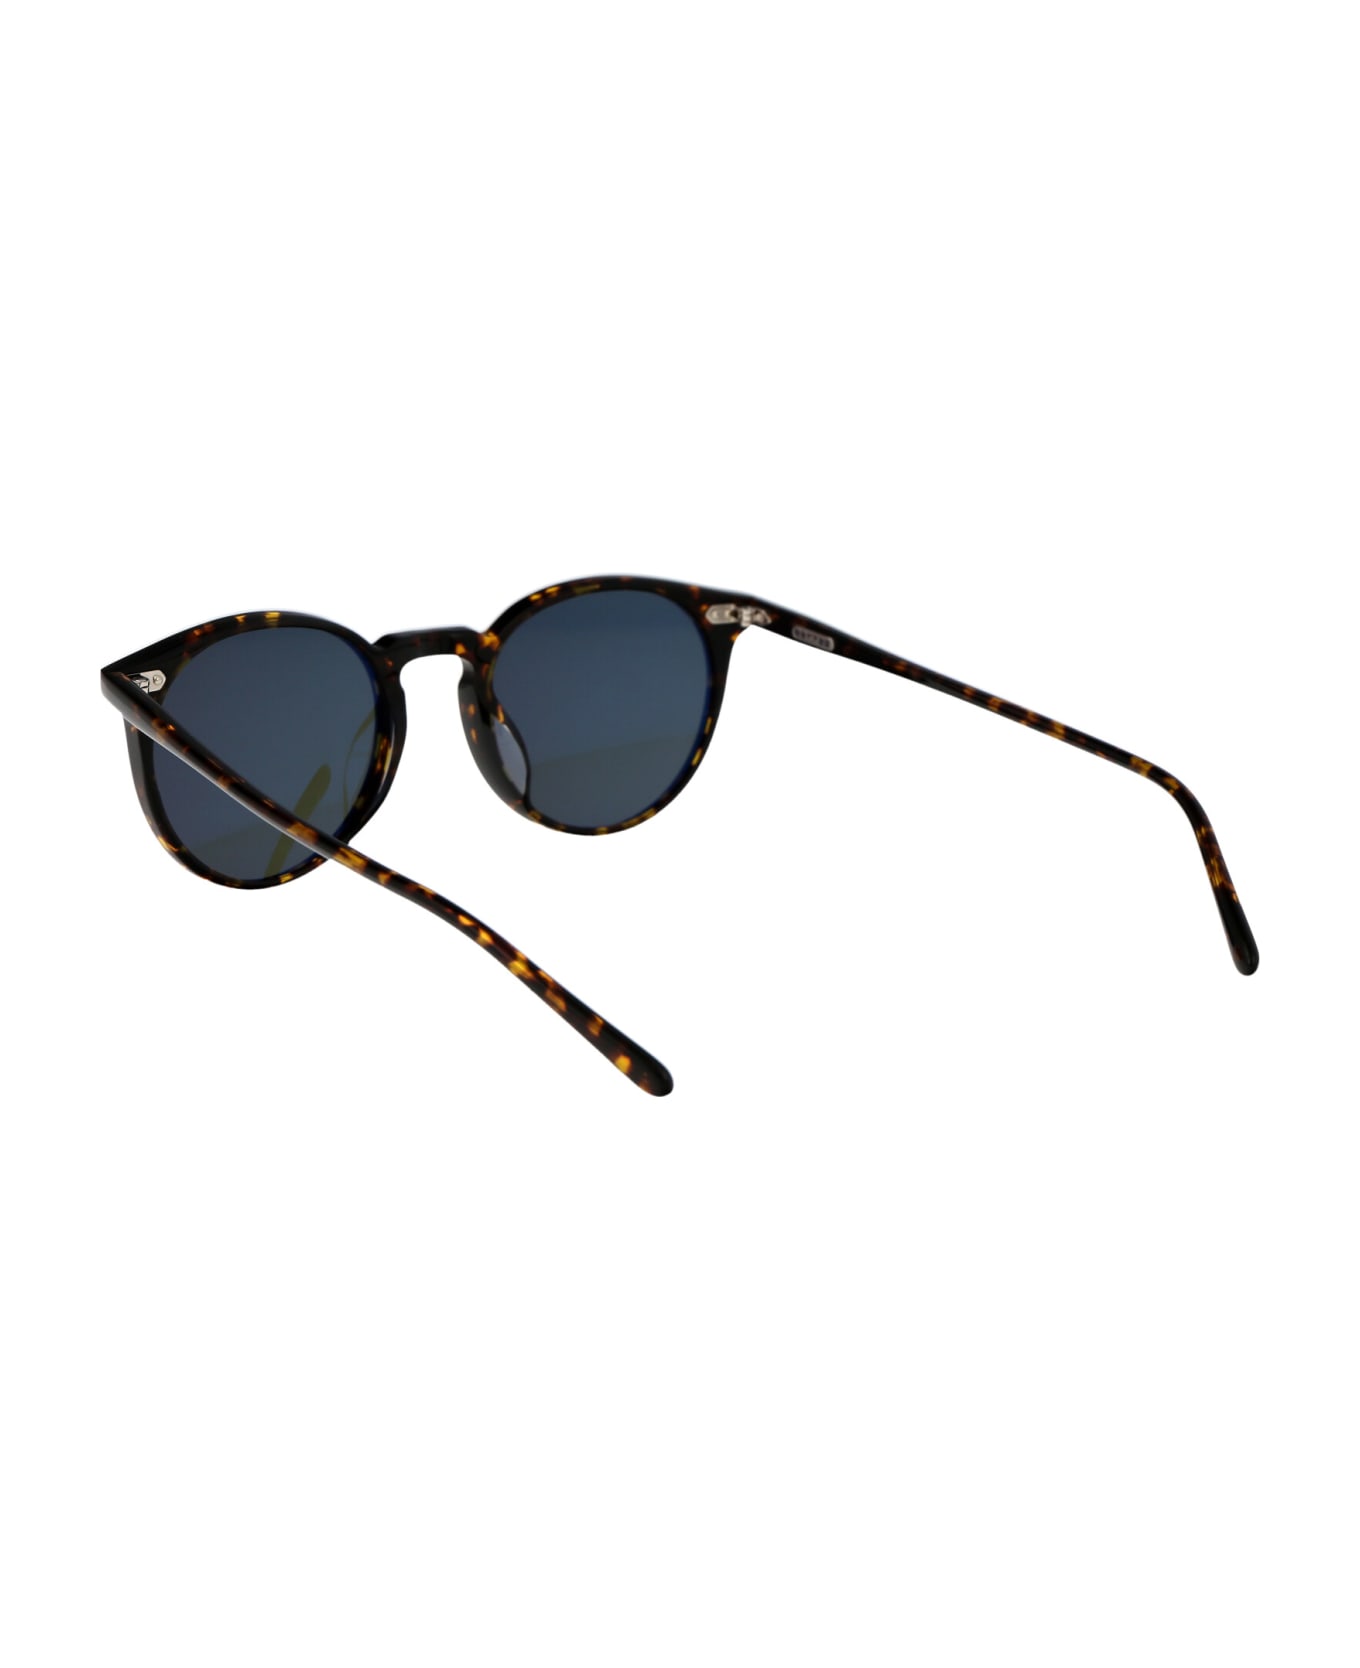 Oliver Peoples N.02 Sun Sunglasses - 174152 Atago Tortoise